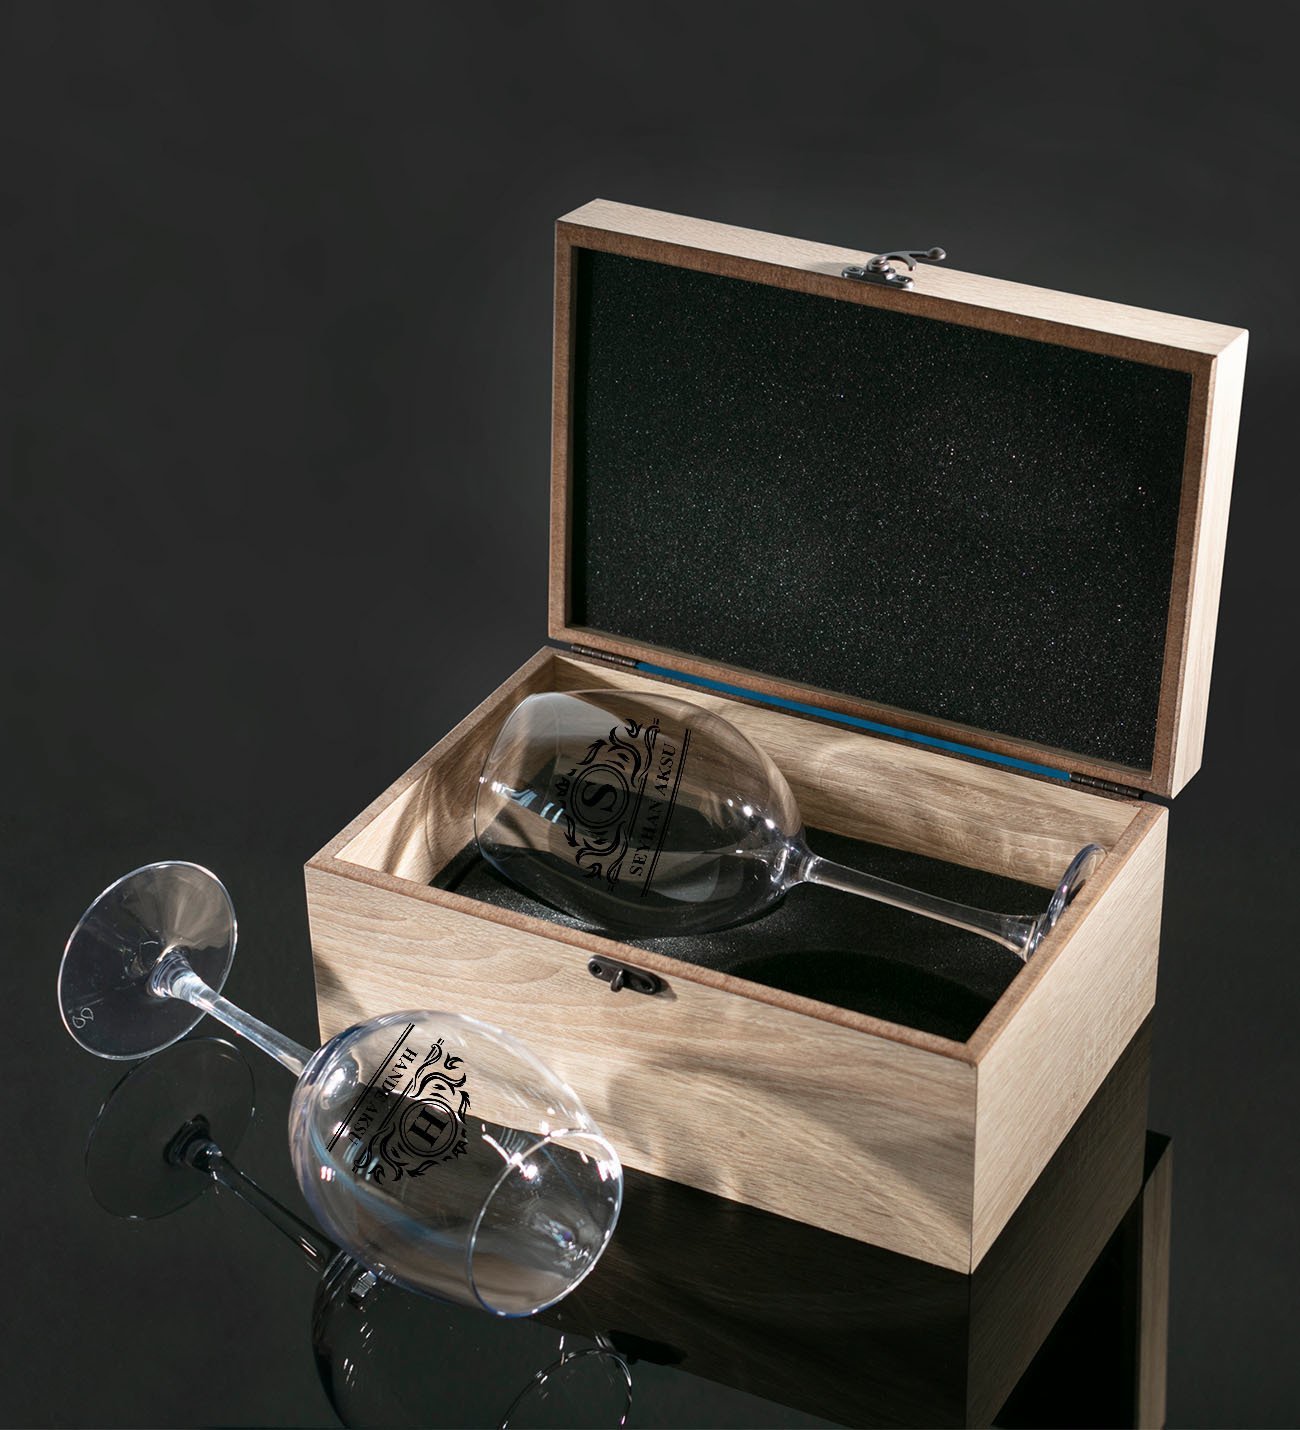 Kişiye Özel Ahşap Kutuda İsimli İkili Şarap Kadehi Hediye Seti Model 12